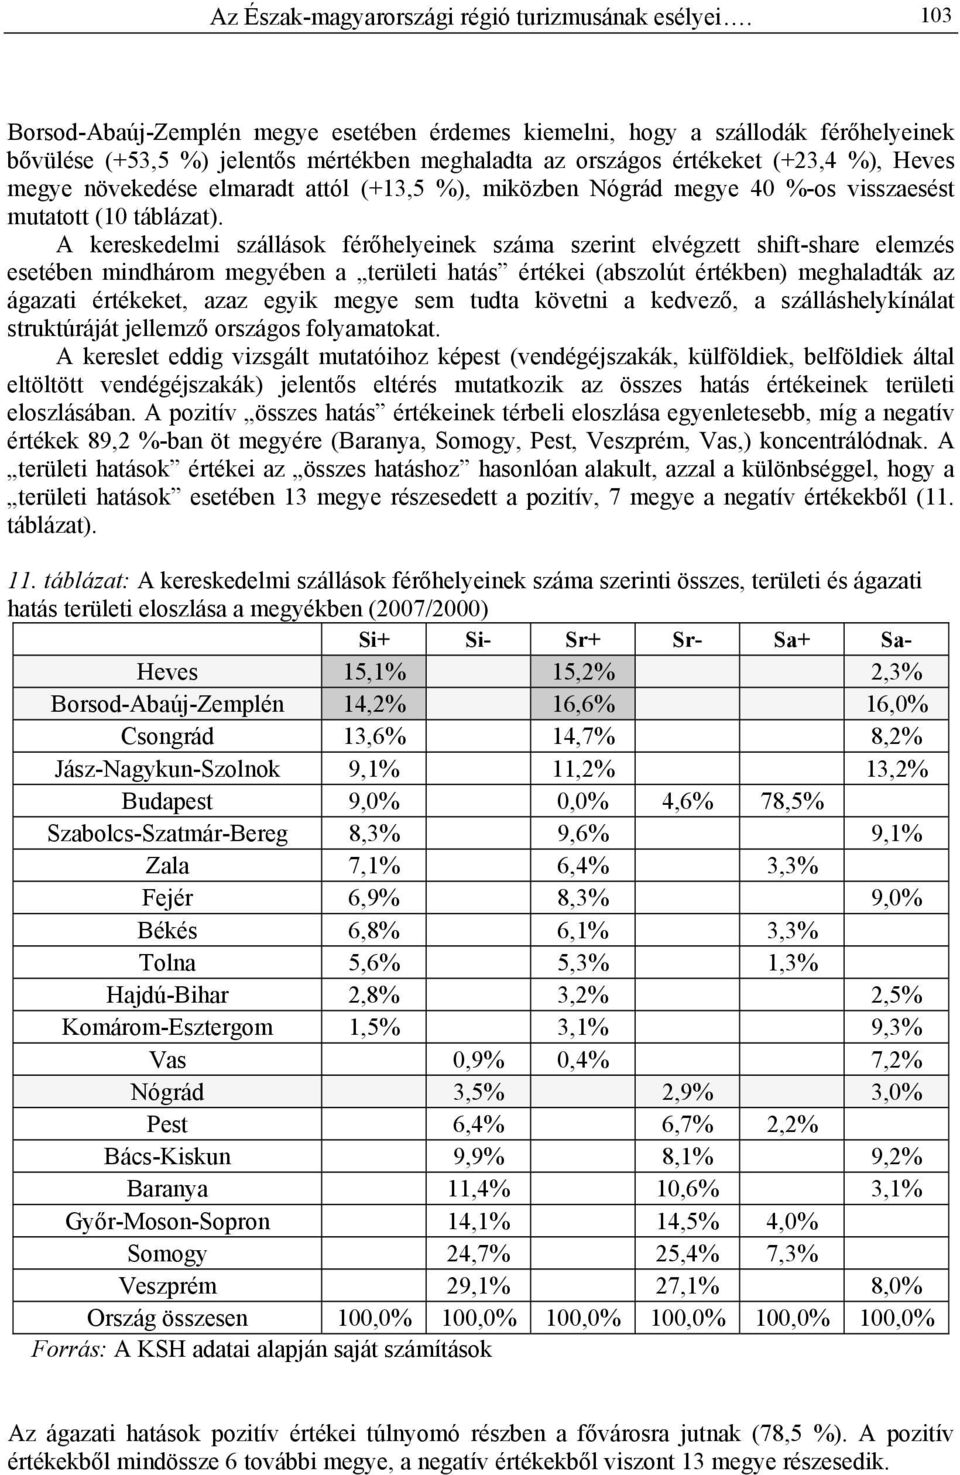 elmaradt attól (+13,5 %), miközben Nógrád megye 40 %-os visszaesést mutatott (10 táblázat).